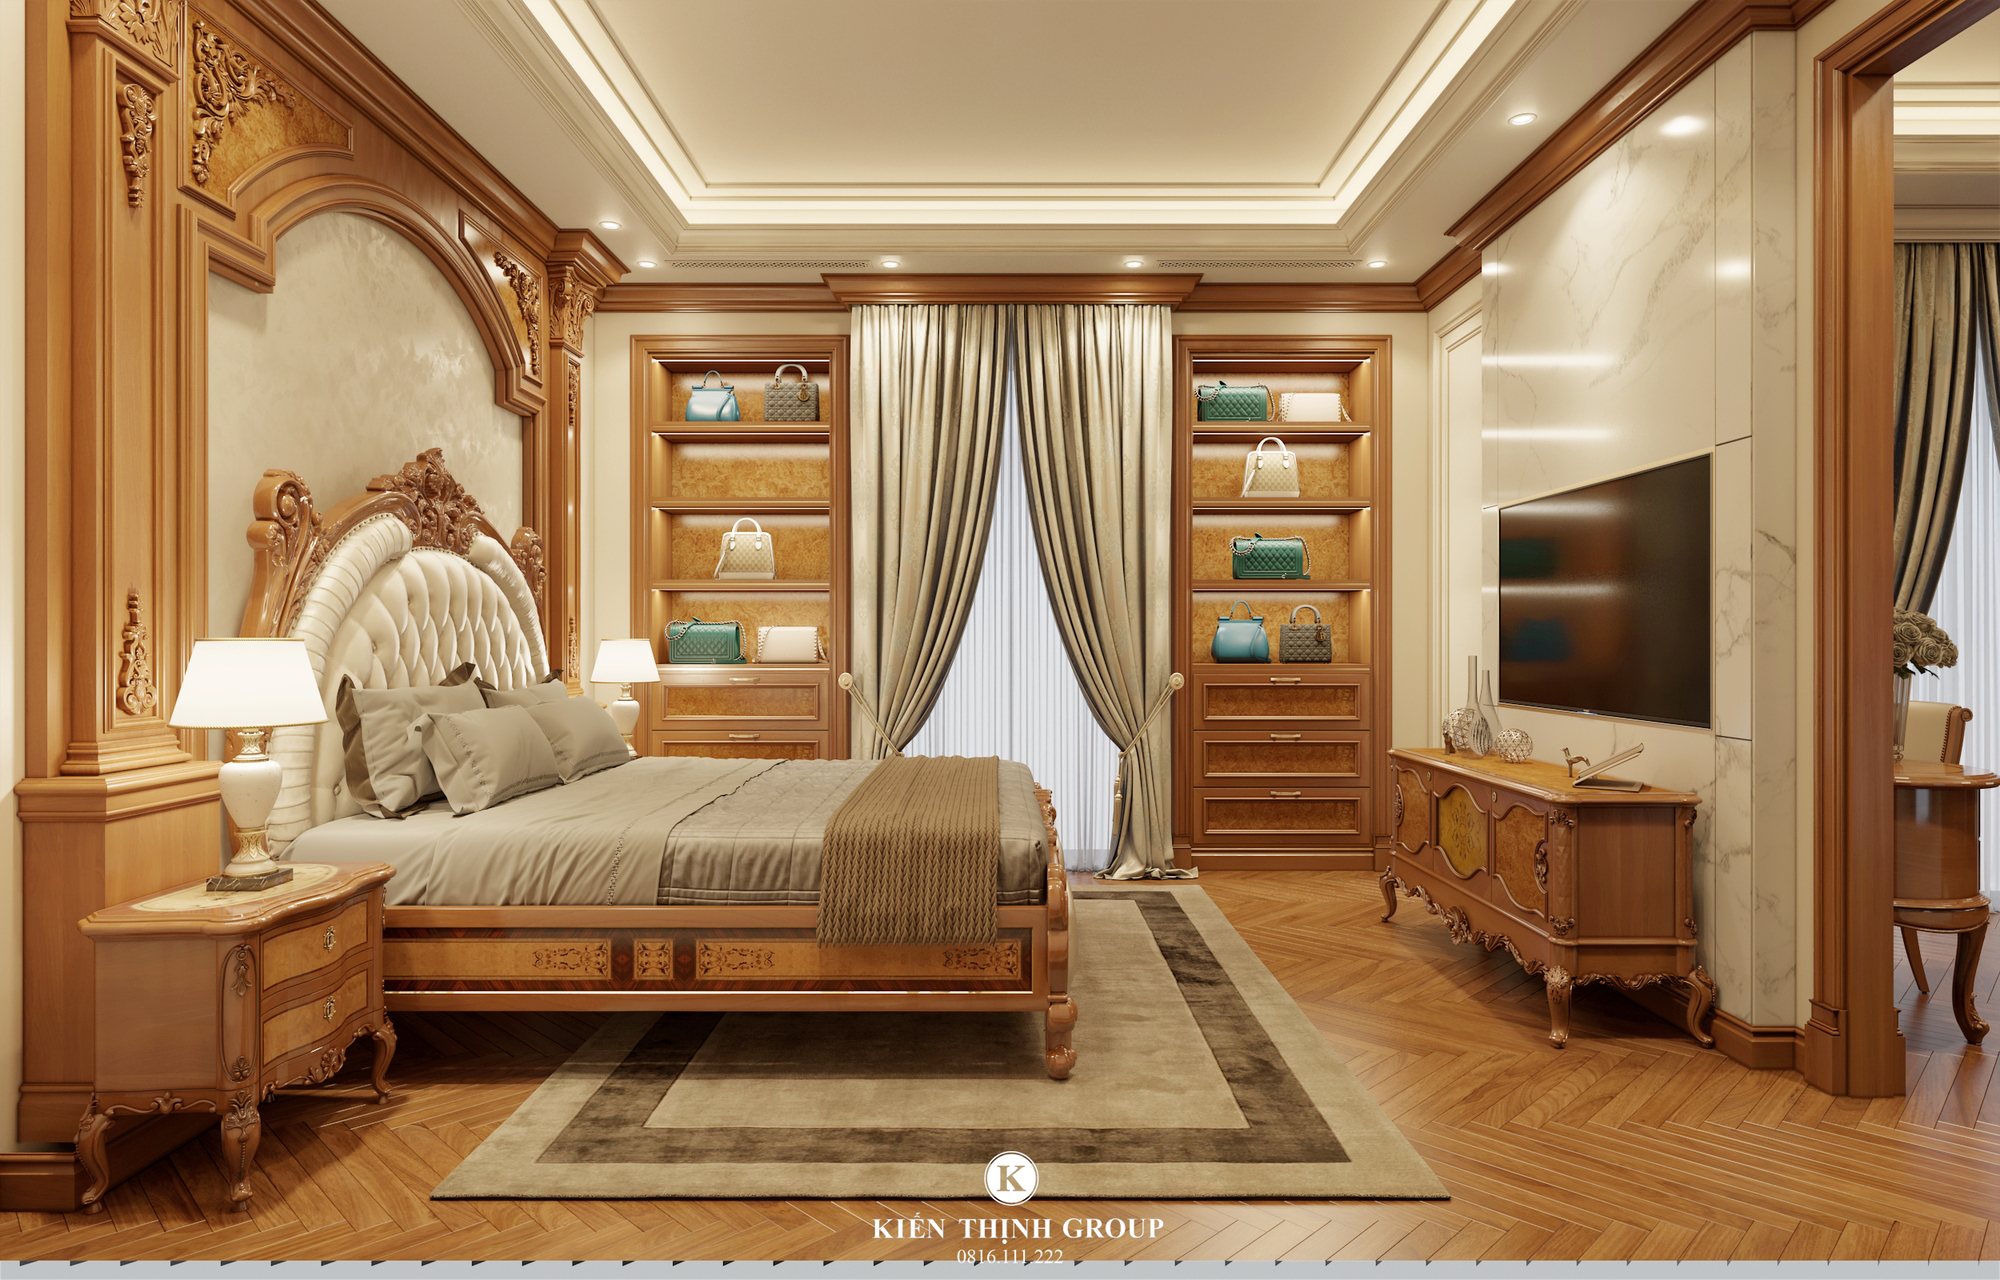 Nội thất gỗ gõ đó mang tới không gian phòng ngủ đẳng cấp thể hiện địa vị của chủ nhà